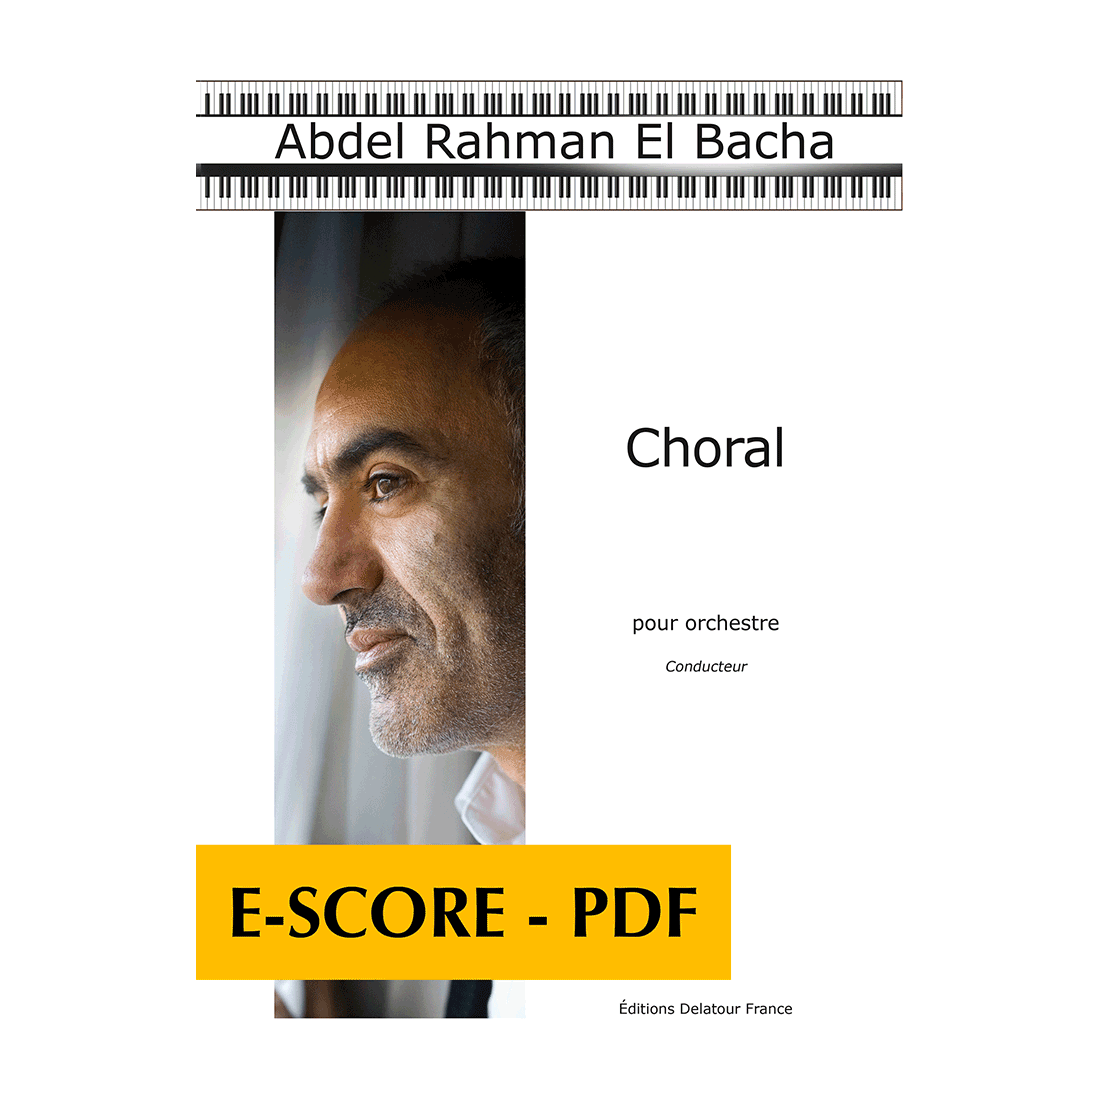 Choral for orchestra (FULL SCORE) - E-score PDF